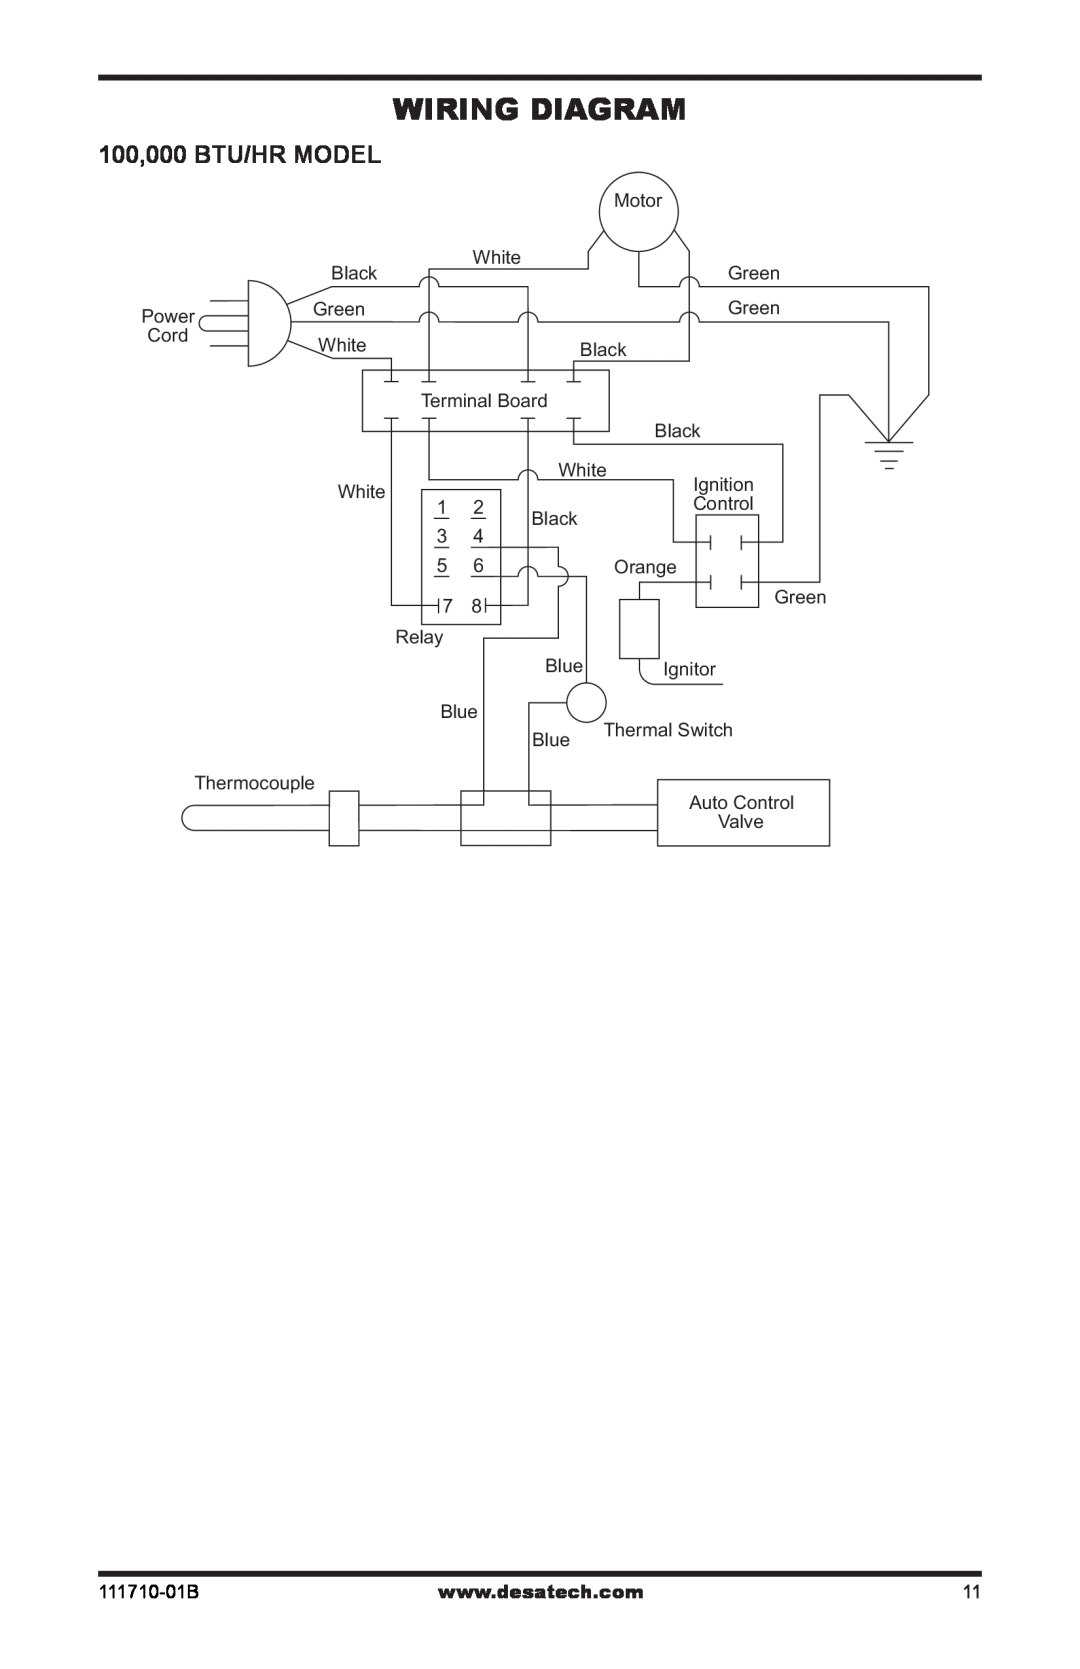 Desa RLP100 owner manual Wiring Diagram, 100,000 BTU/HR MODEL 